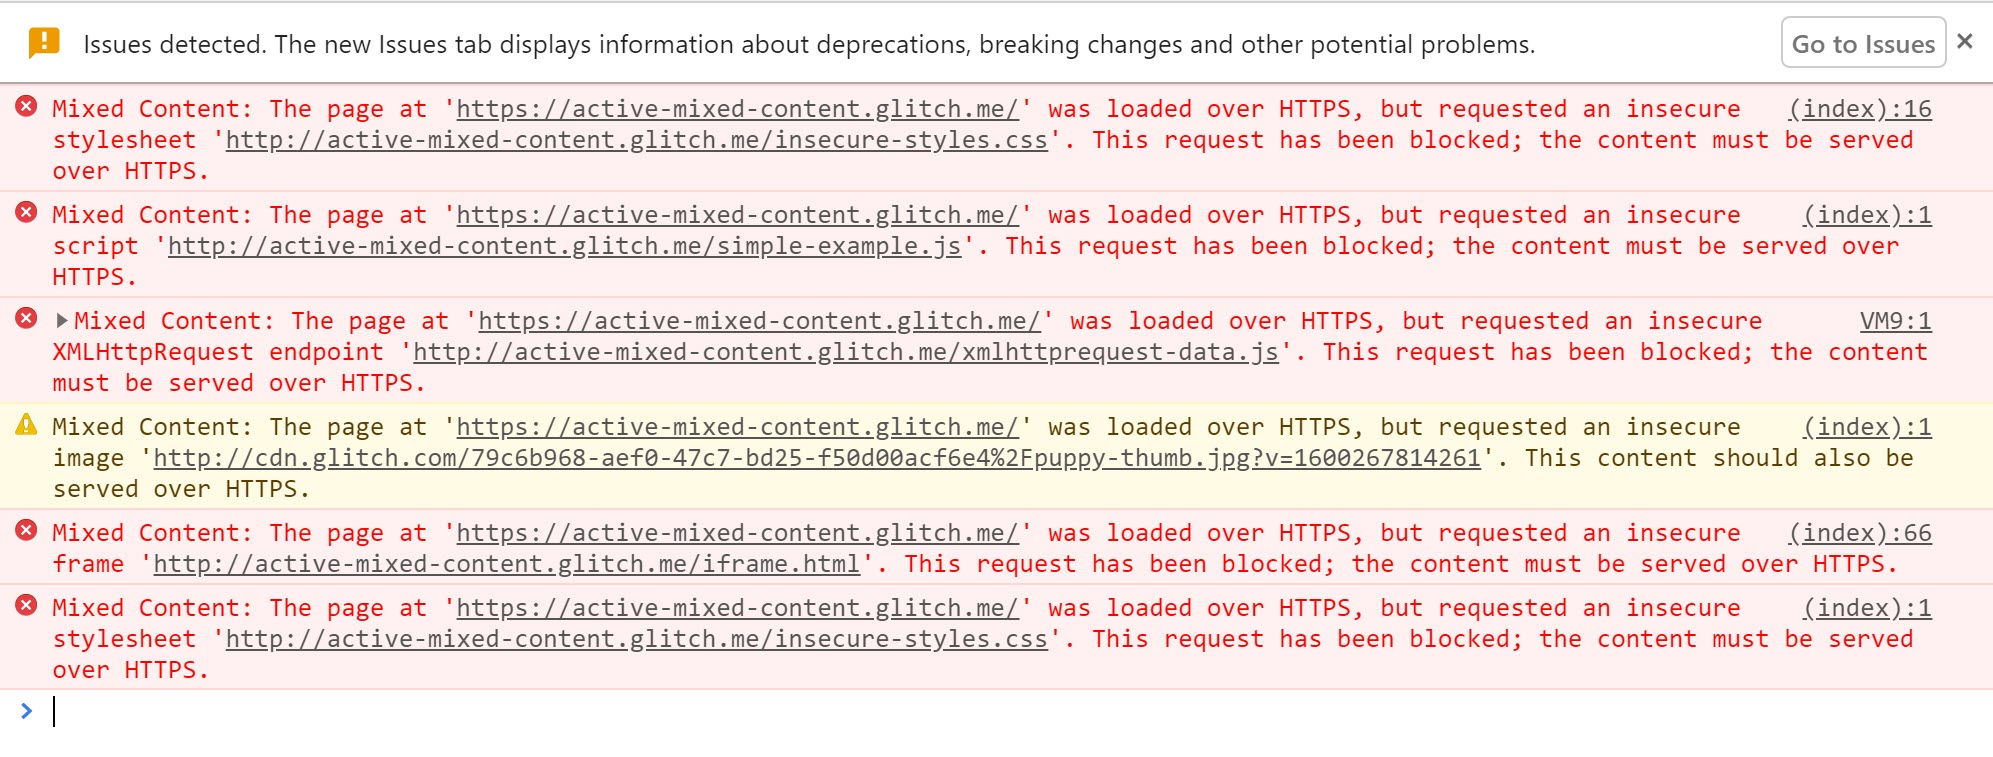 Outils pour les développeurs Chrome affichant les avertissements affichés lorsque le contenu mixte actif est bloqué